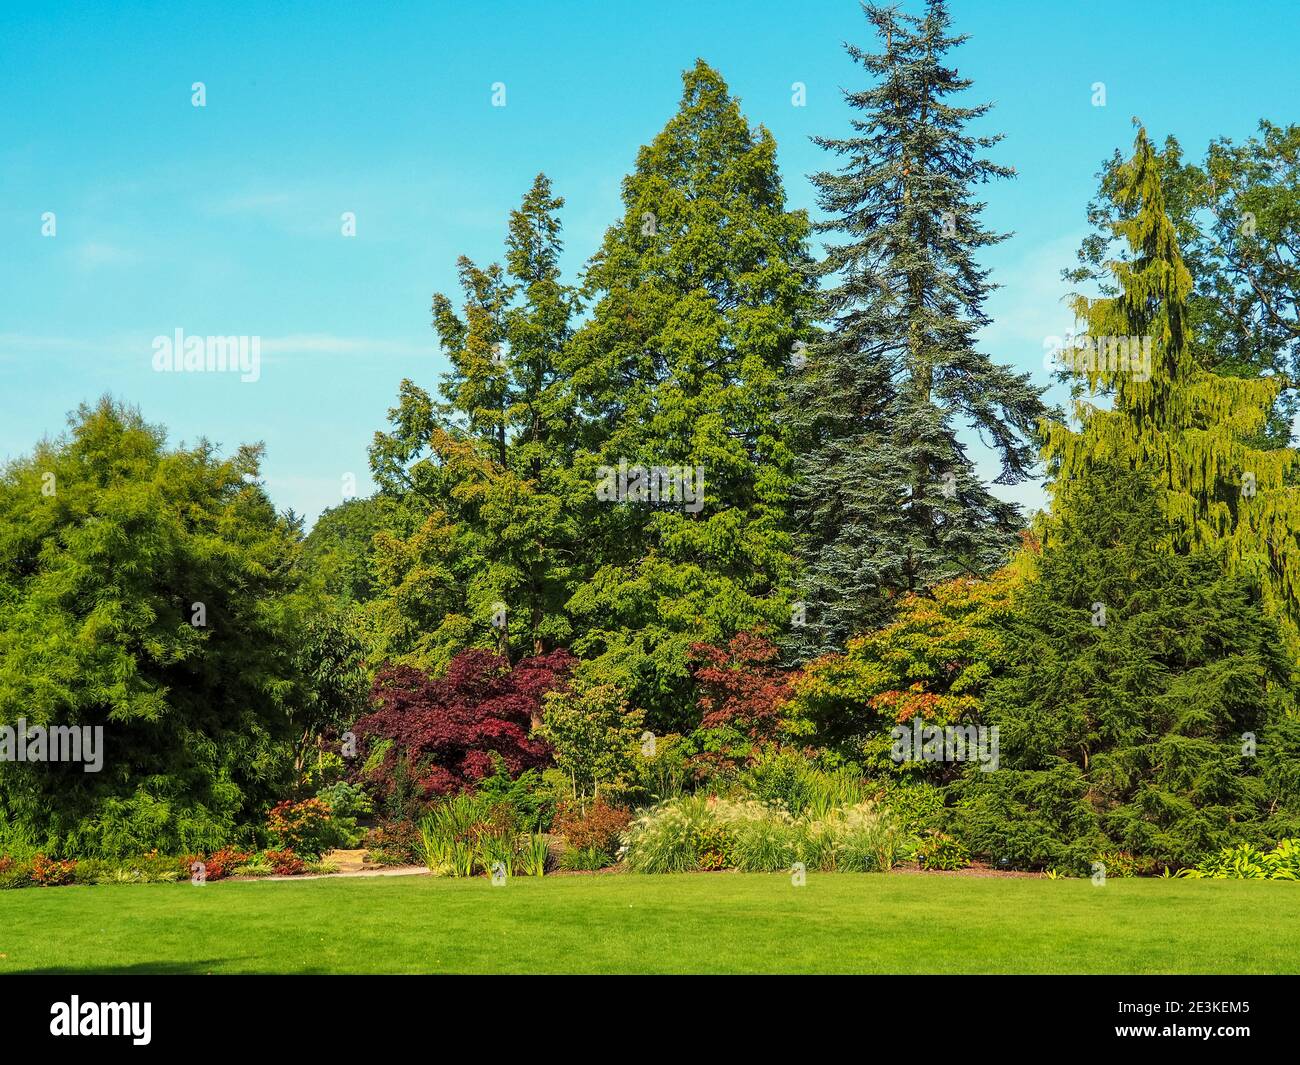 Beau groupe d'arbres et une pelouse d'herbe dans un jardin d'été Banque D'Images